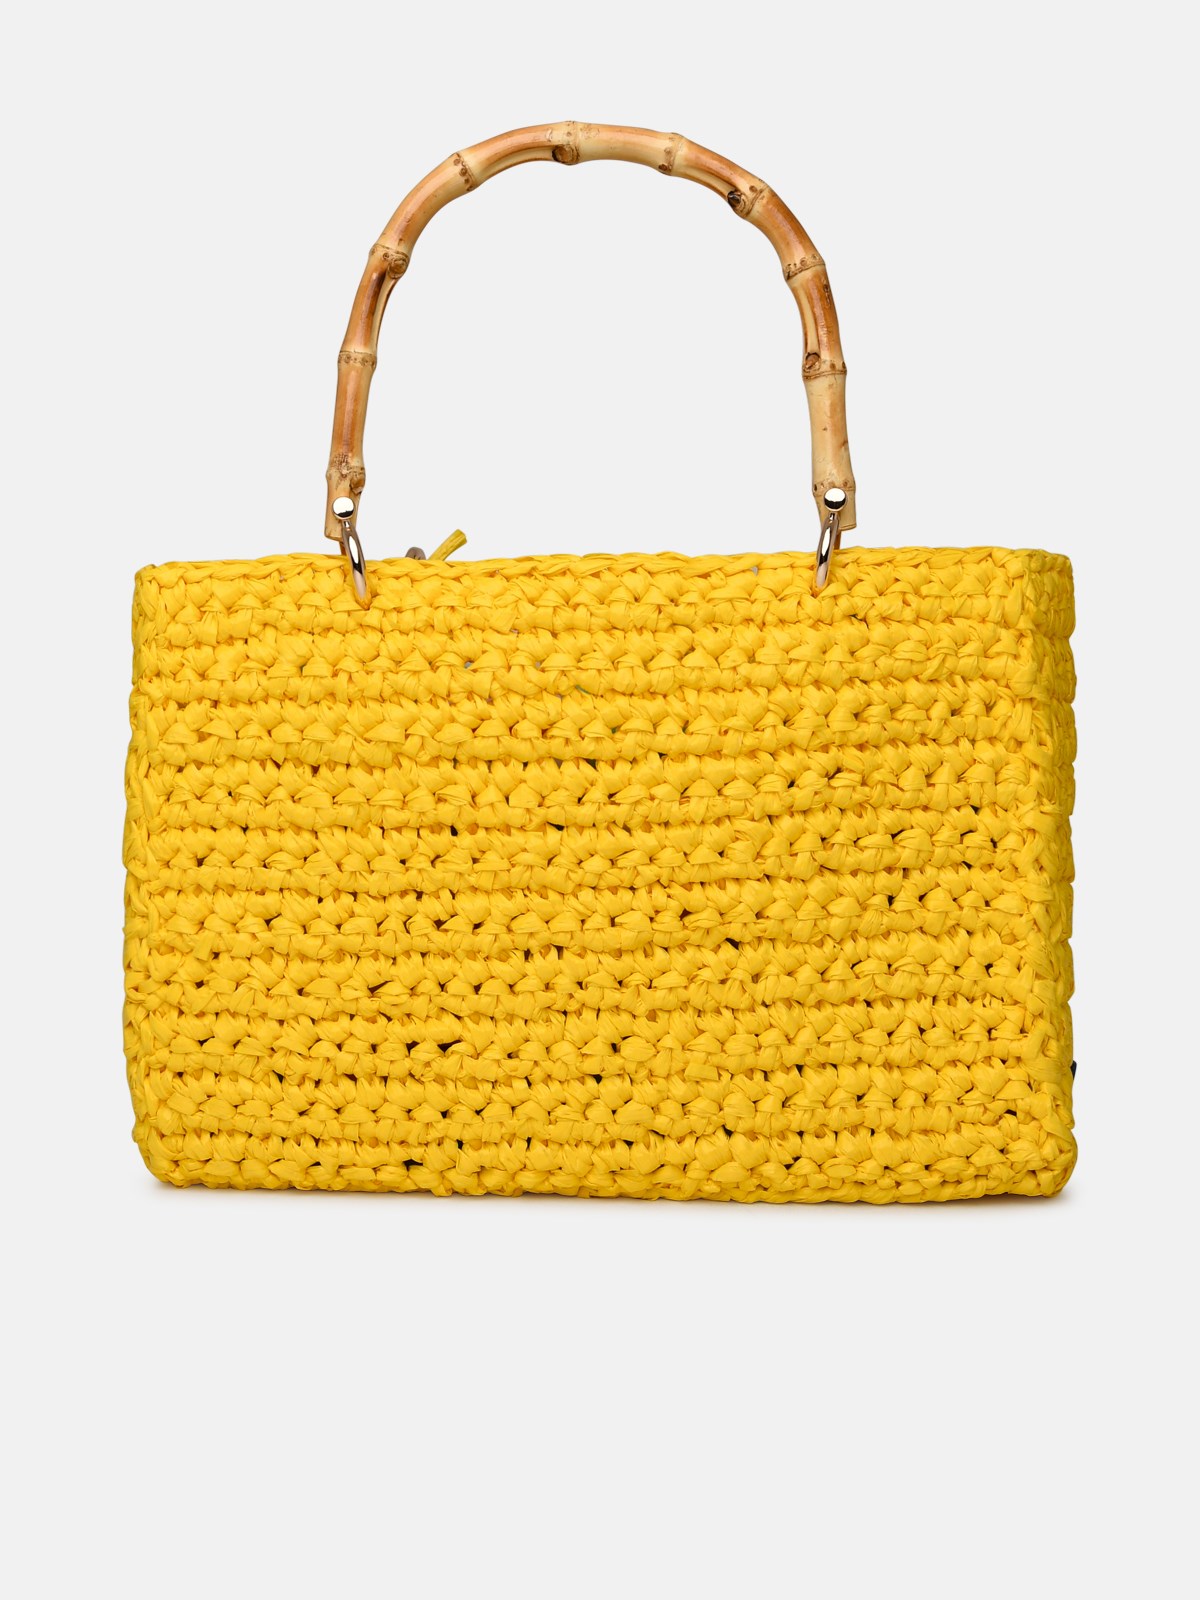 Chica Venus Yellow Raffia Bag